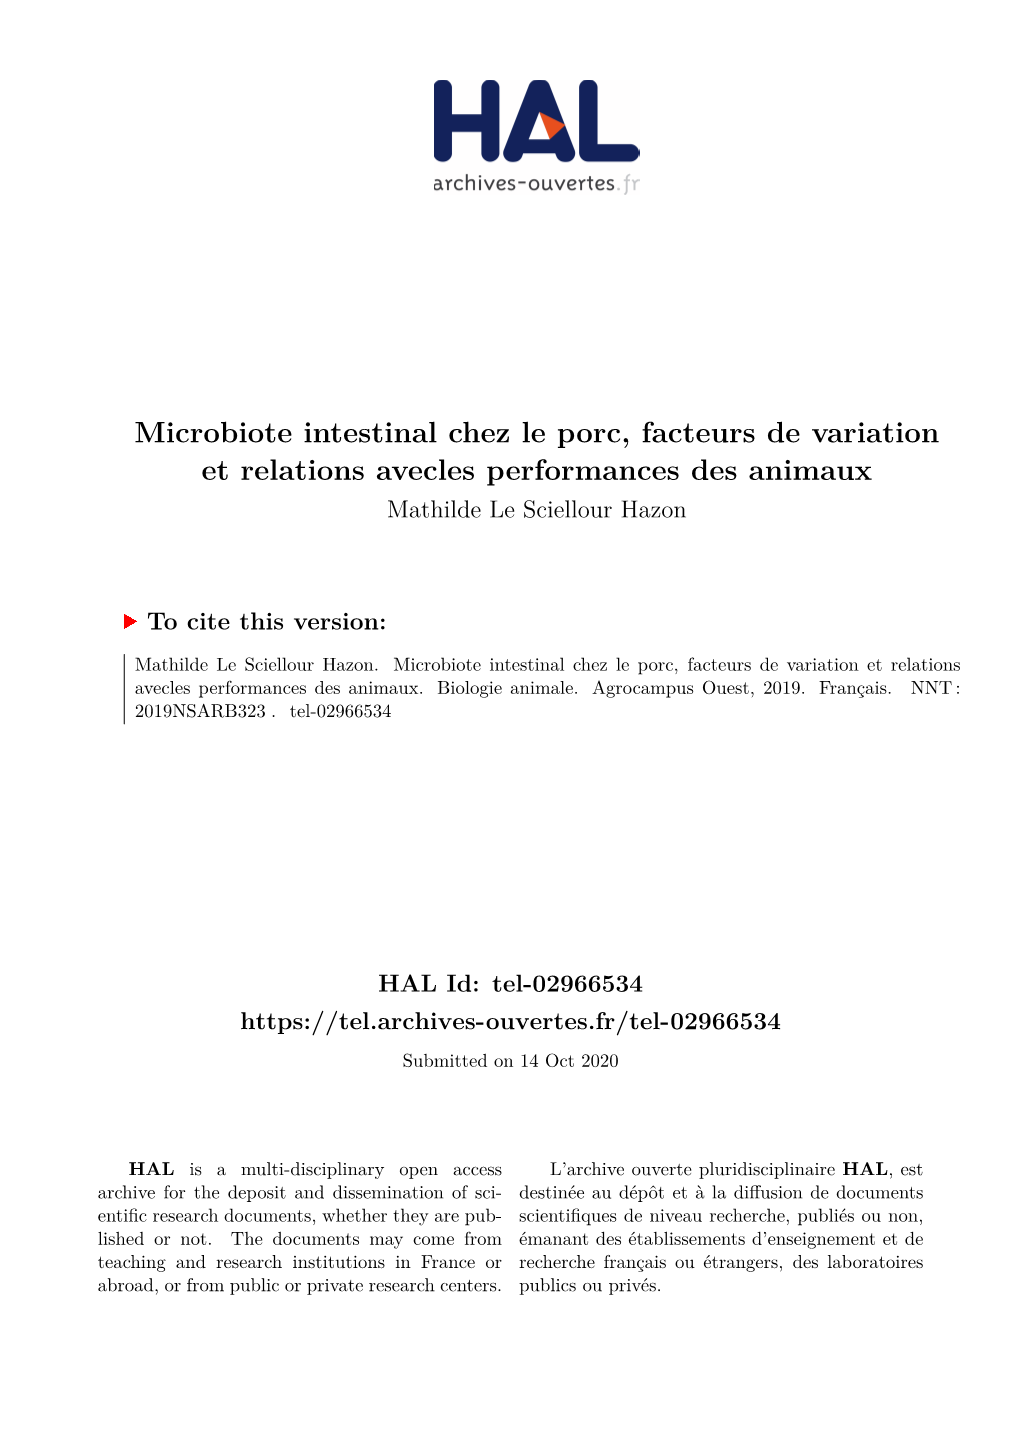 Microbiote Intestinal Chez Le Porc, Facteurs De Variation Et Relations Avecles Performances Des Animaux Mathilde Le Sciellour Hazon